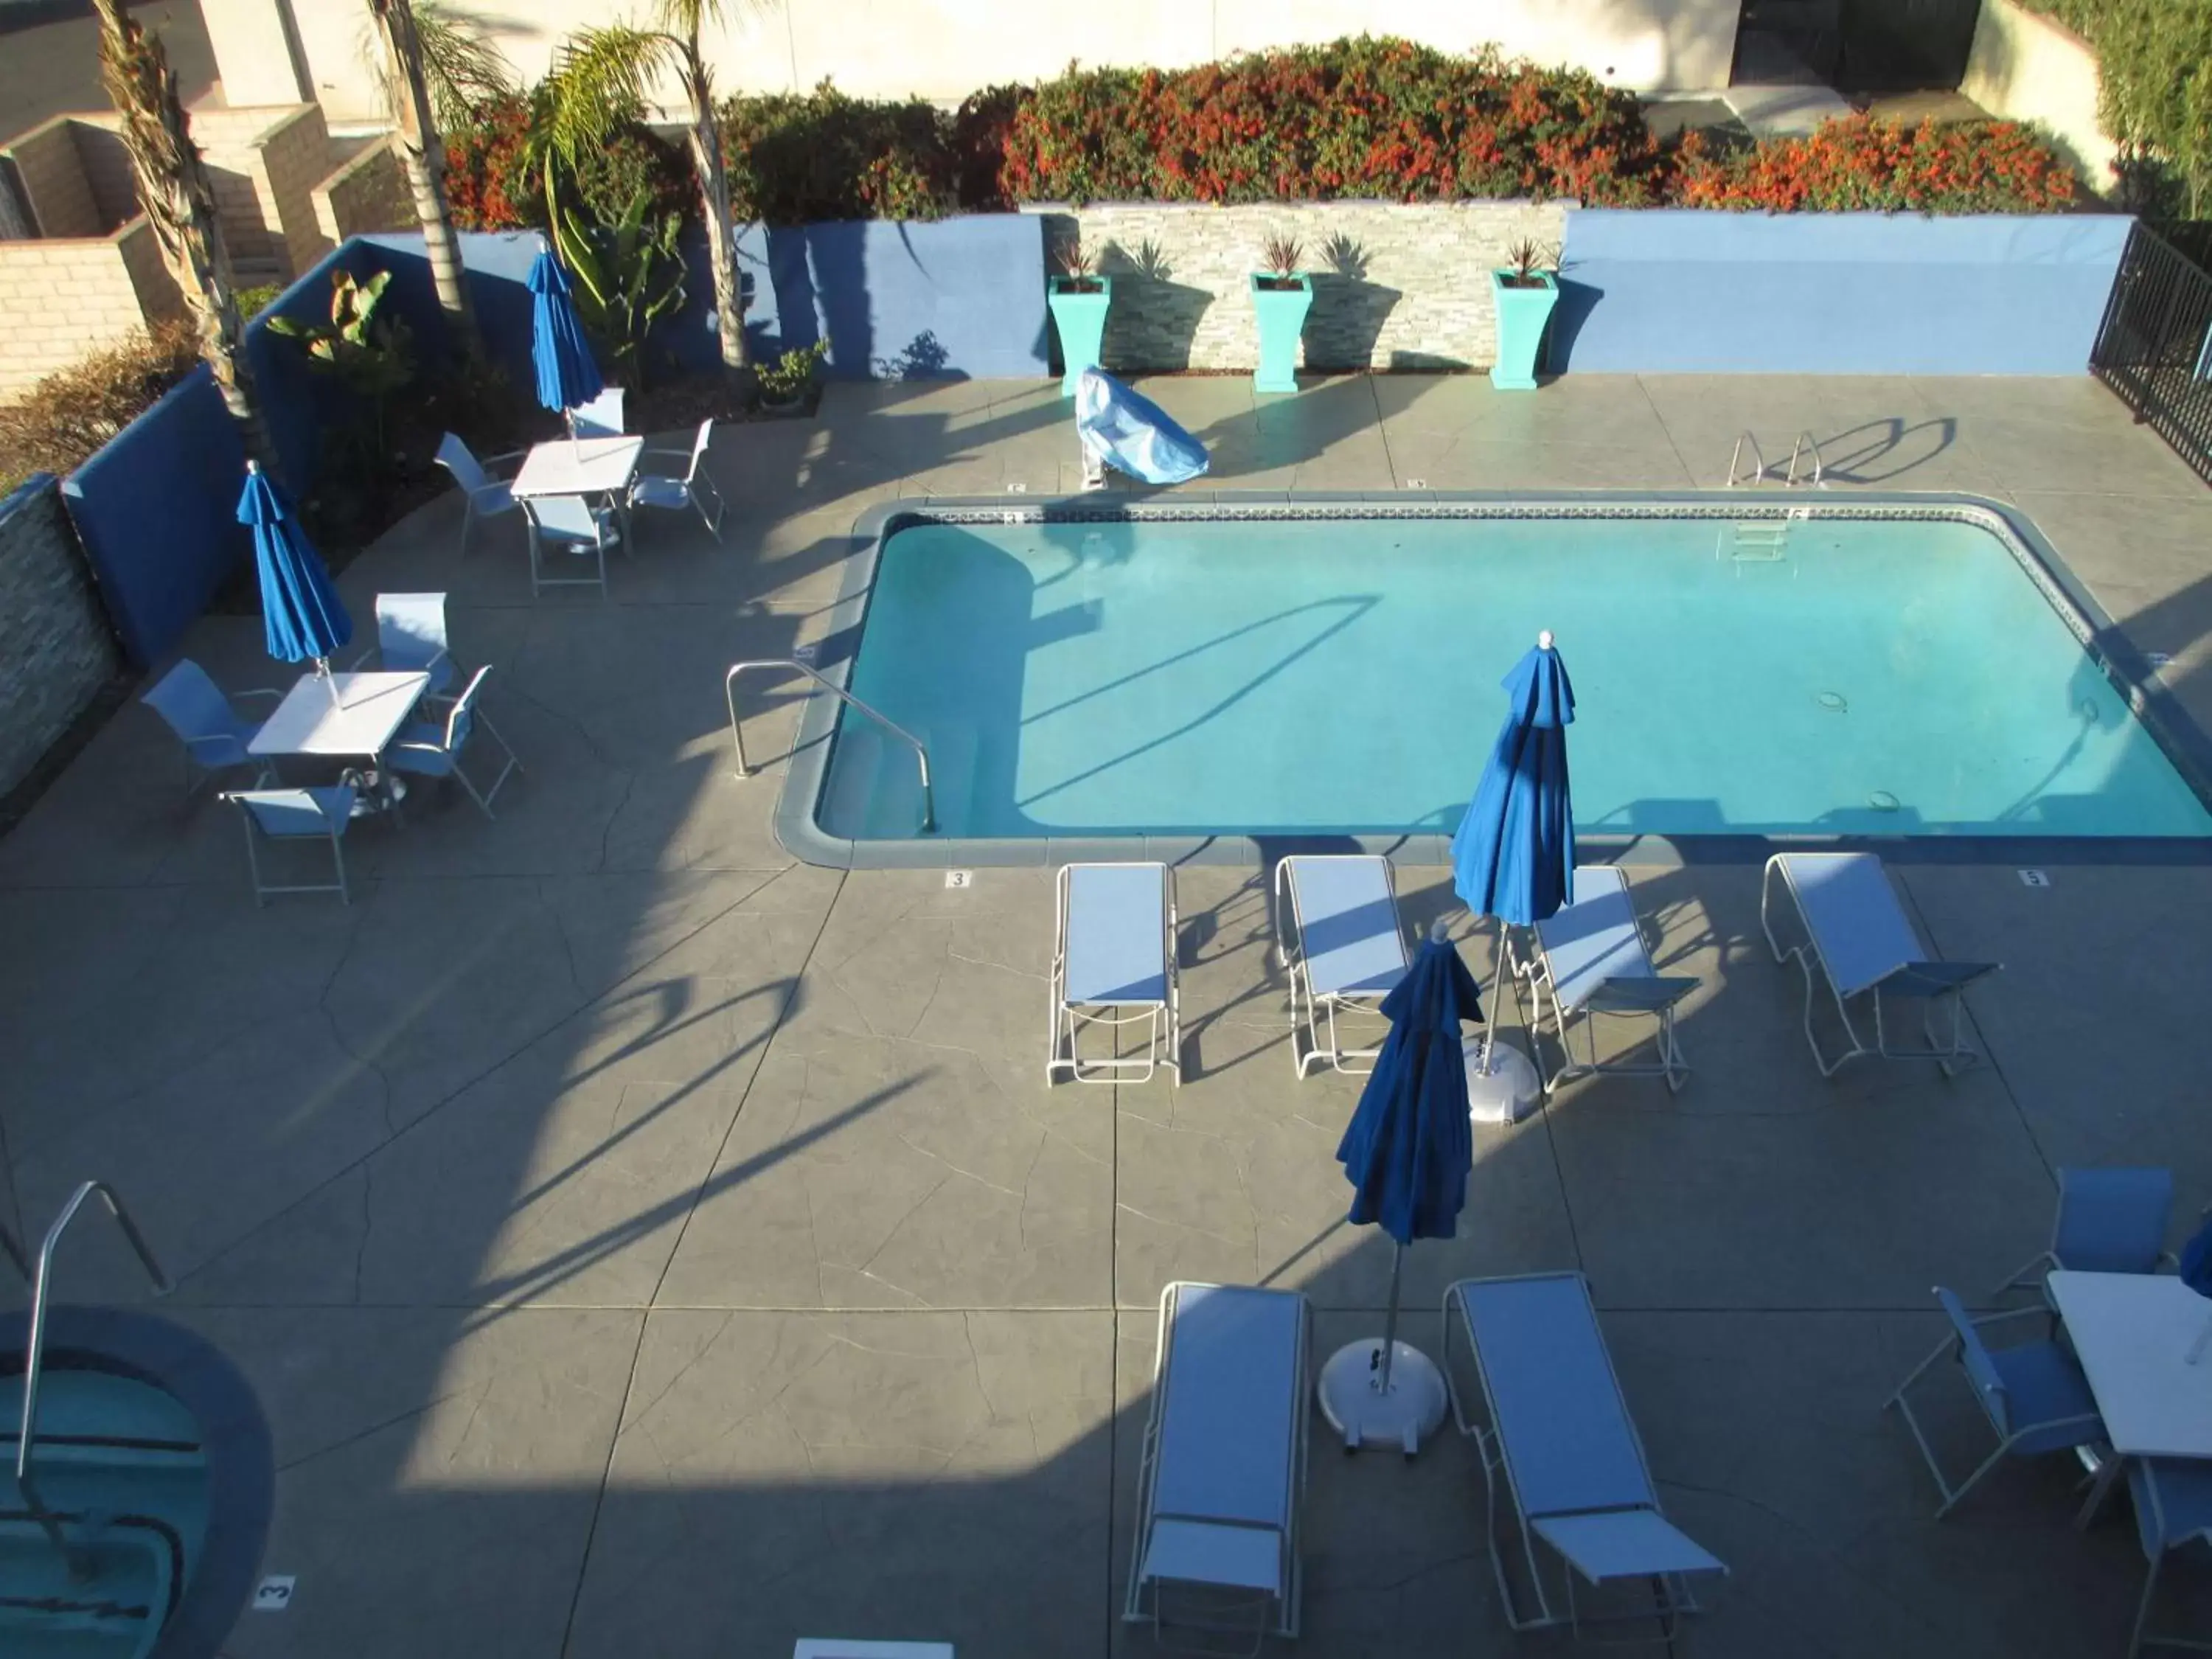 On site, Pool View in Best Western Plus Diamond Valley Inn